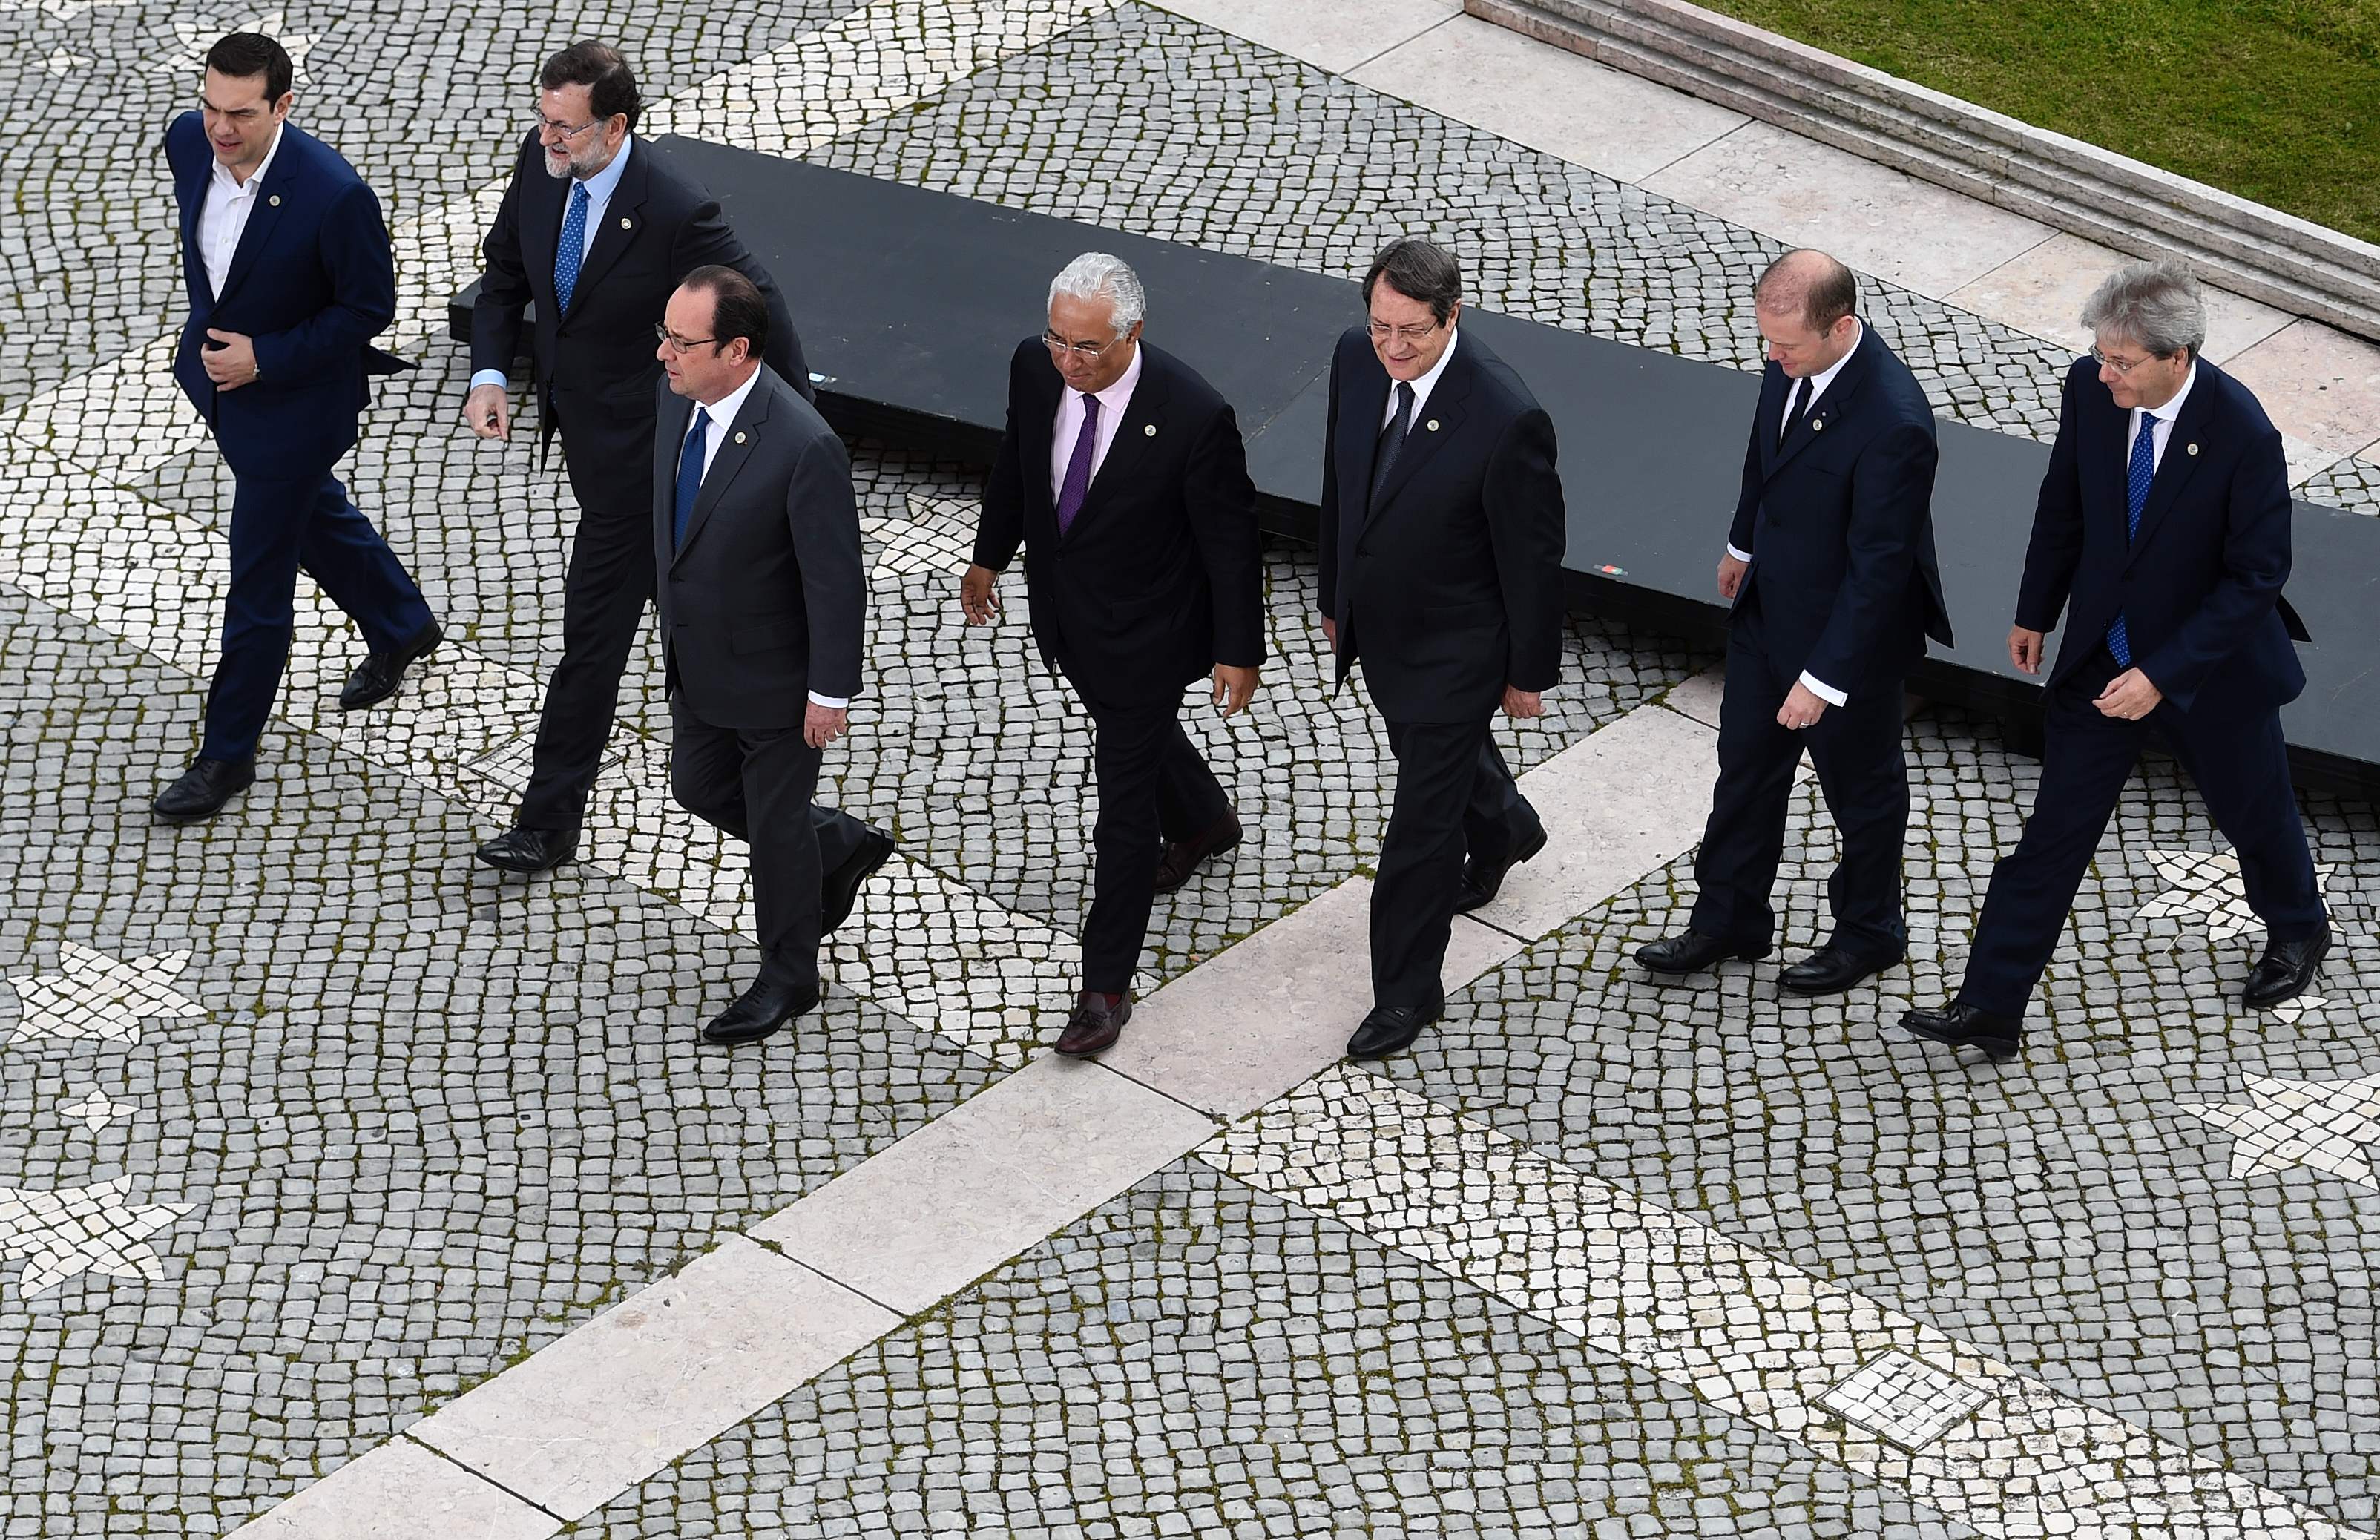 قادة الدول المشاركة فى قمة لشبونة يغادرون منصة التصوير لبدء الاجتماع